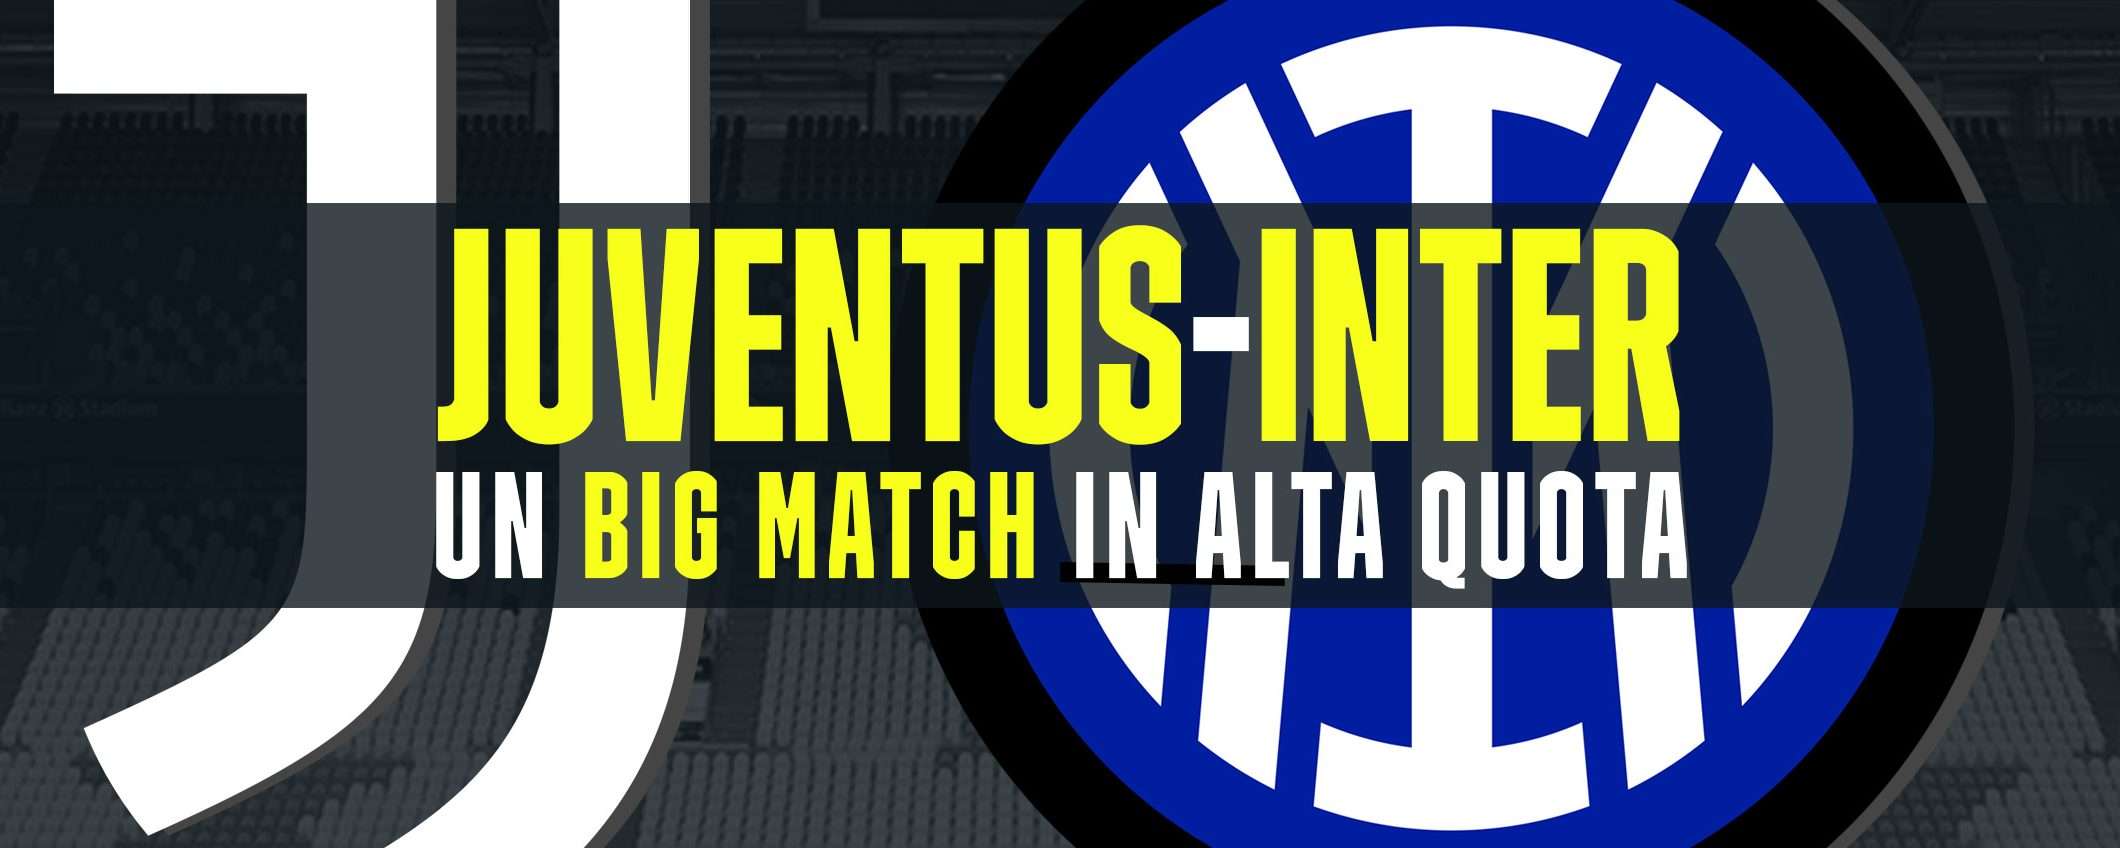 Juventus-Inter: un big match in alta quota